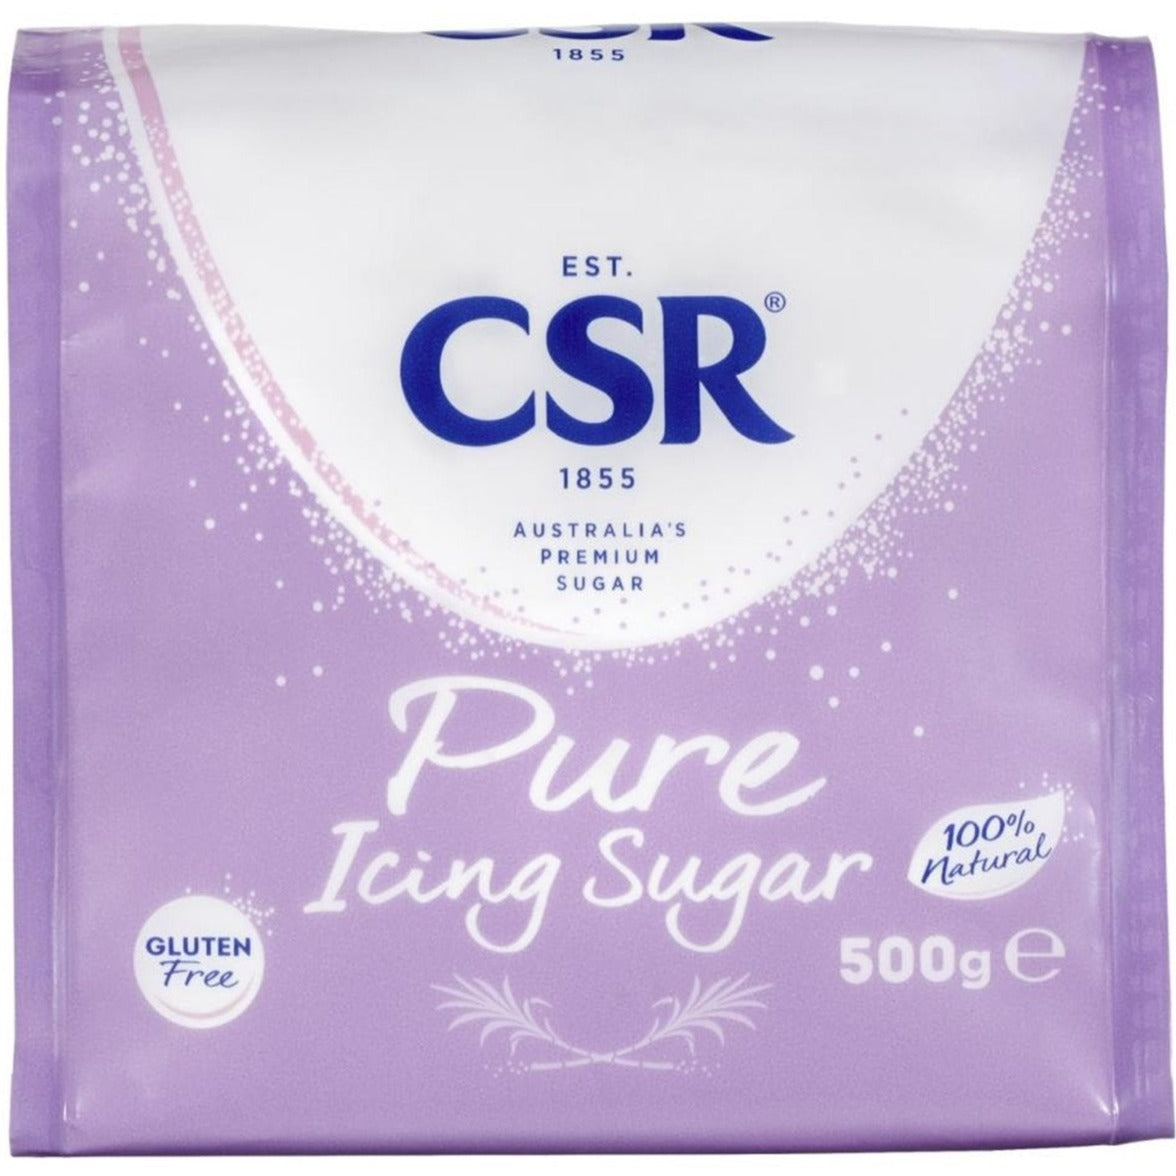 CSR Pure Icing Sugar Mixture Gluten Free 500g